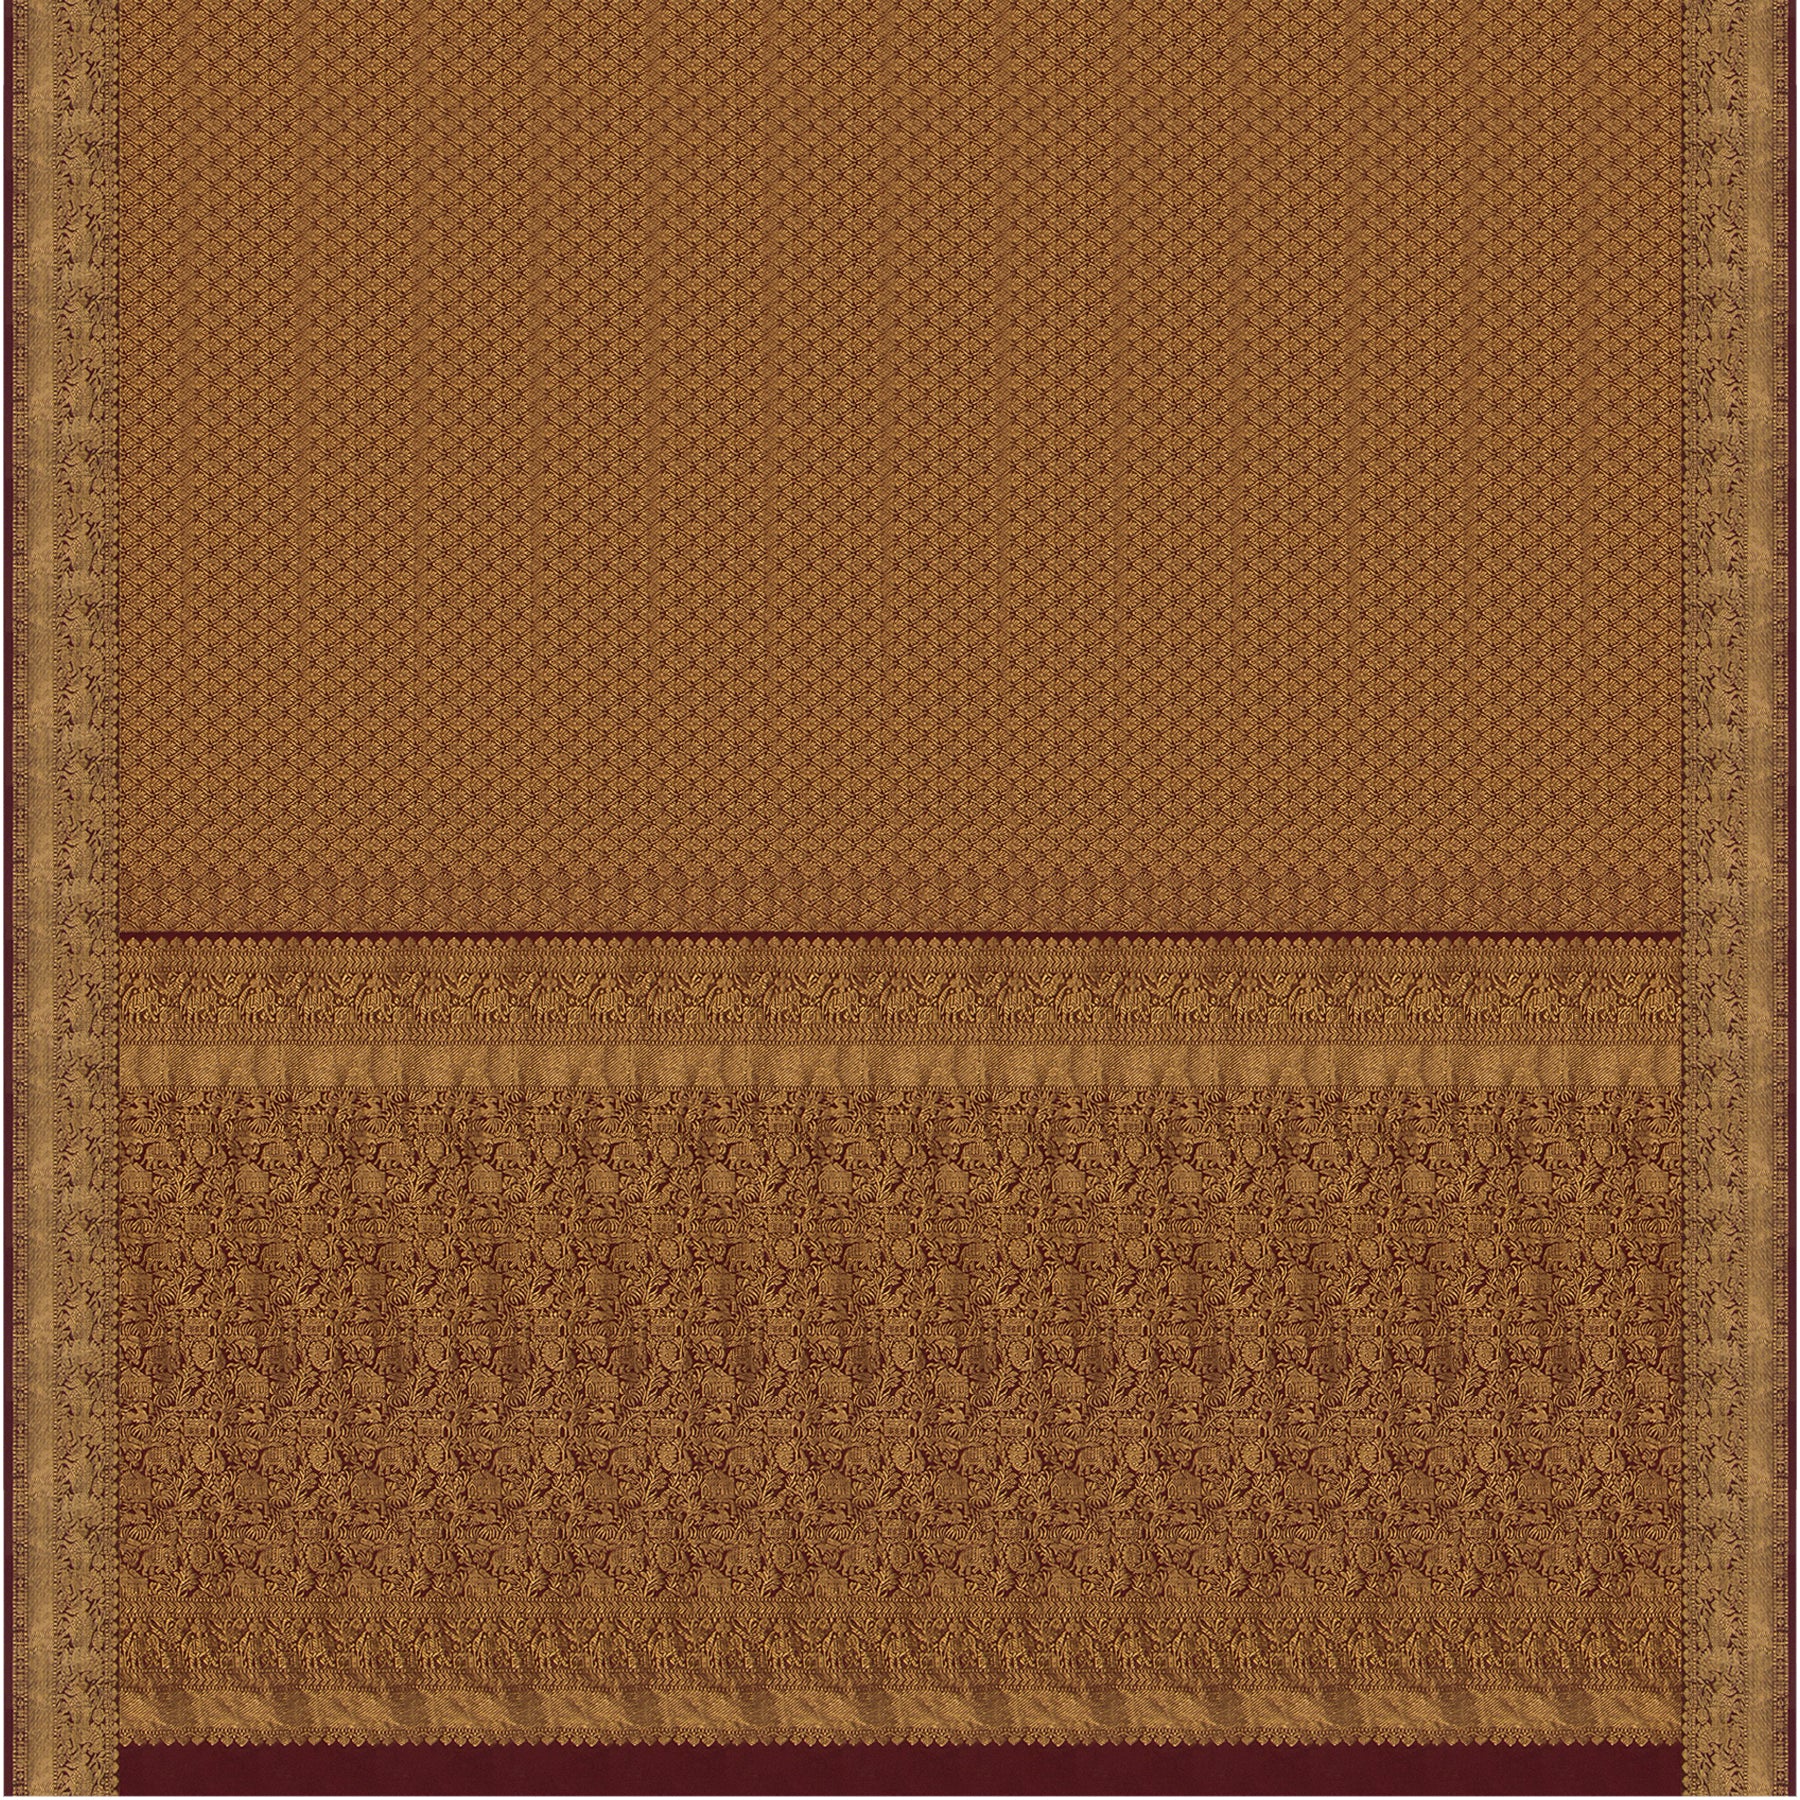 Kanakavalli Kanjivaram Silk Sari 21-100-HS001-02172 - Full View